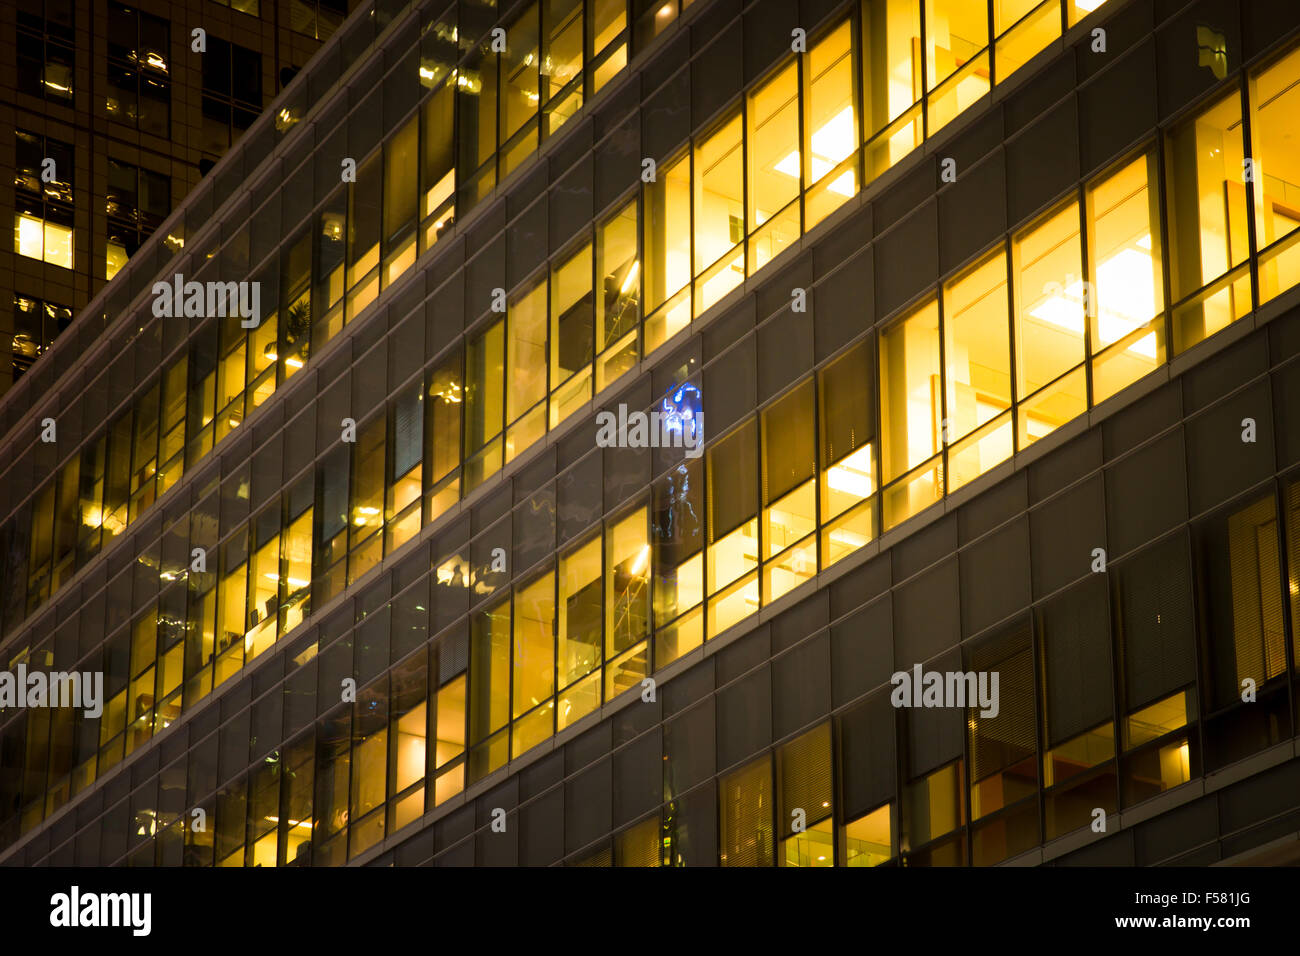 Immeuble de bureaux modernes avec des fenêtres éclairées la nuit Banque D'Images